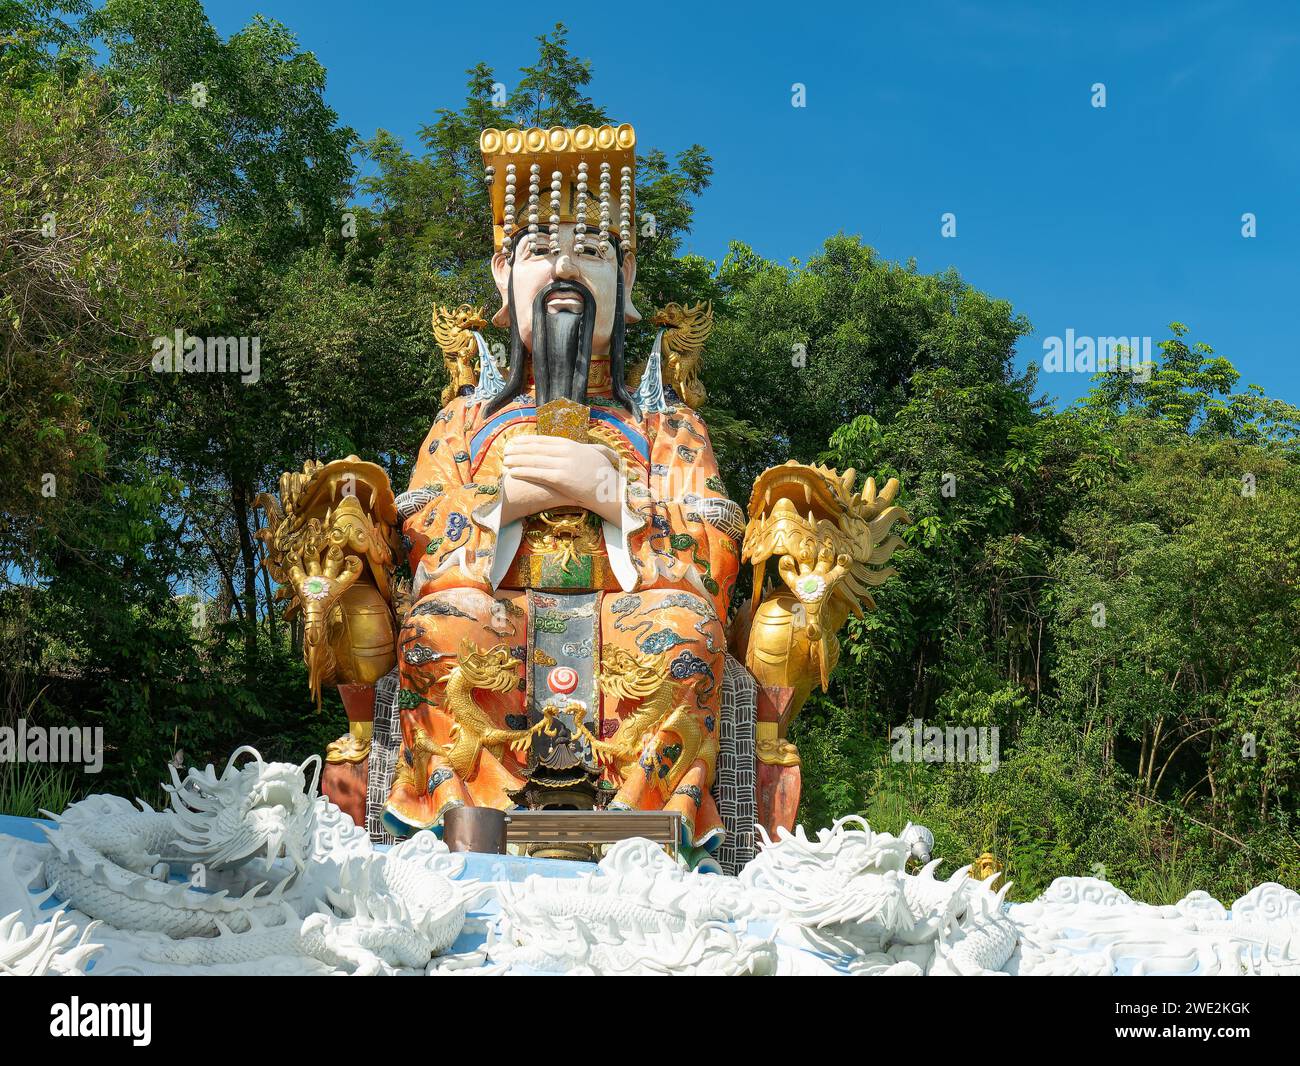 Statua dell'Imperatore di Giada, o nonno celeste seduto in un mare di draghi, una divinità della mitologia cinese alla vetta del Hat Yai Municipality Park Foto Stock